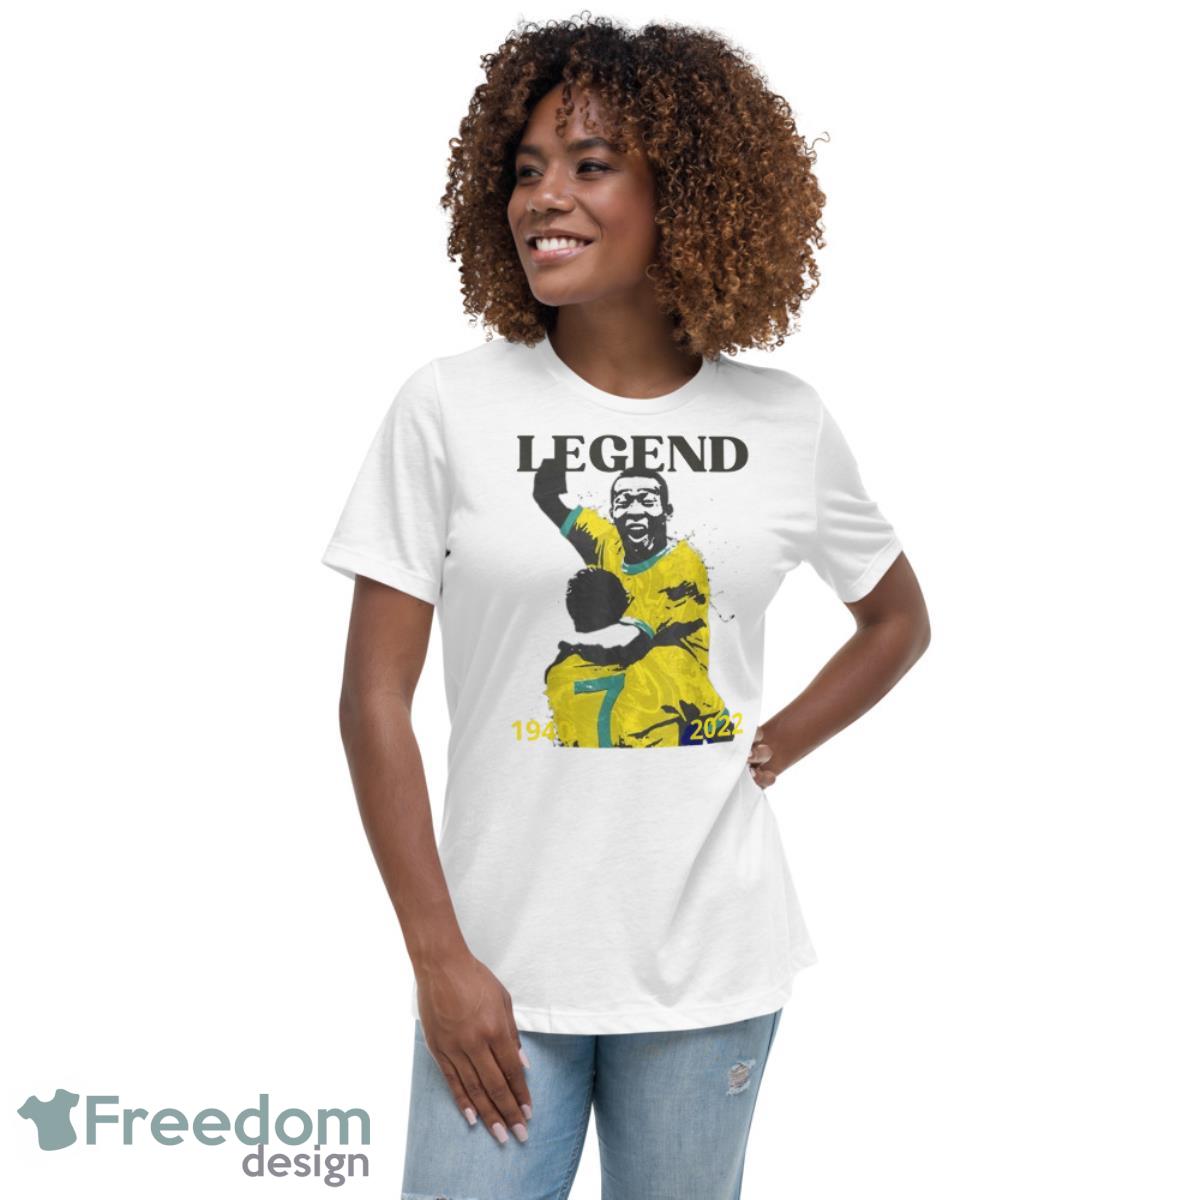 Pele Football Legend Shirt For Fan